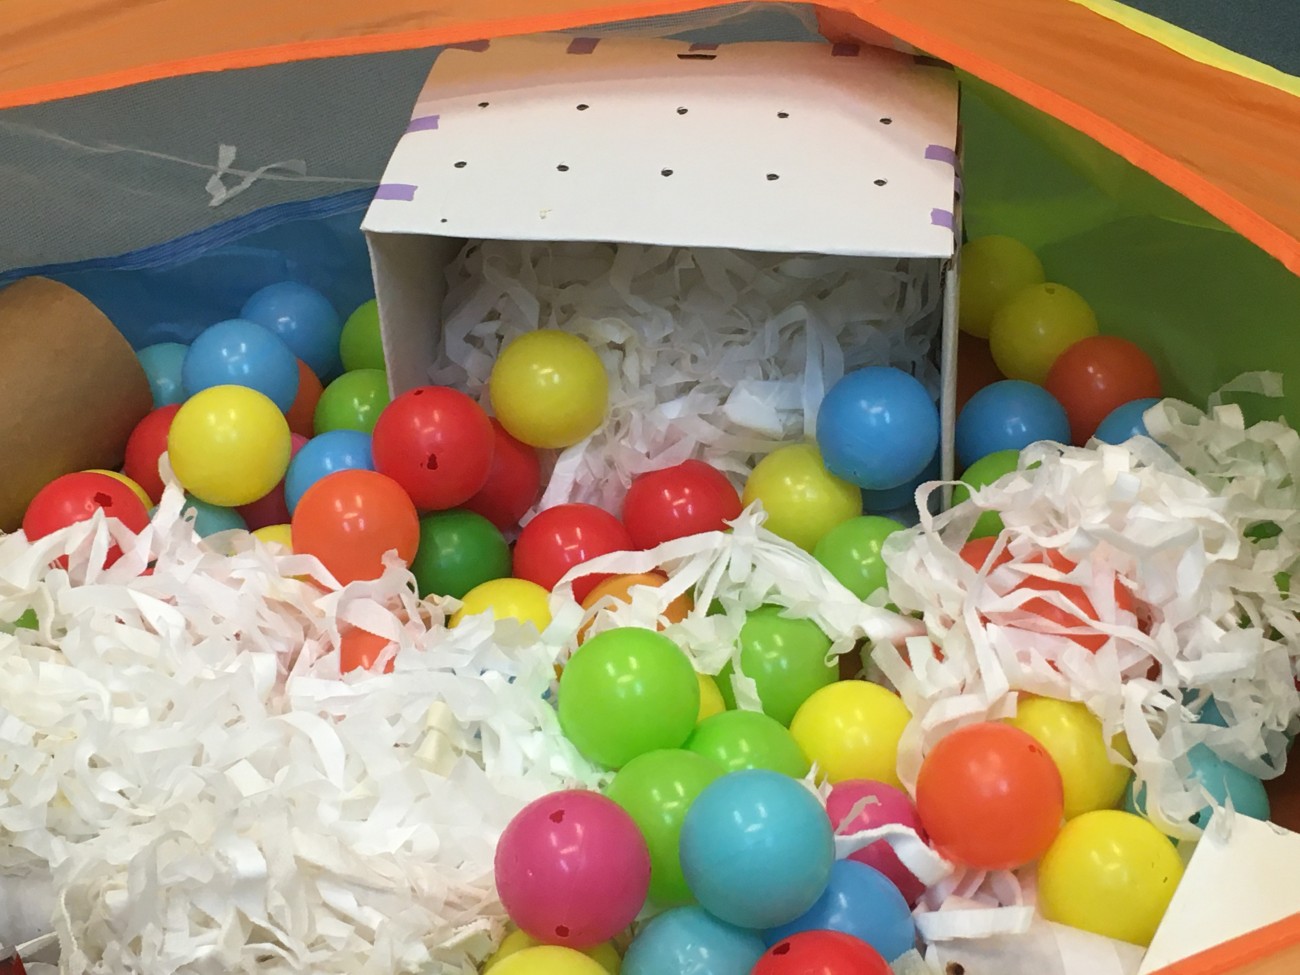 一个穿孔的纸板箱放在游戏围栏里。载体里装满了条状的垫层材料，周围环绕着色彩鲜艳的球。